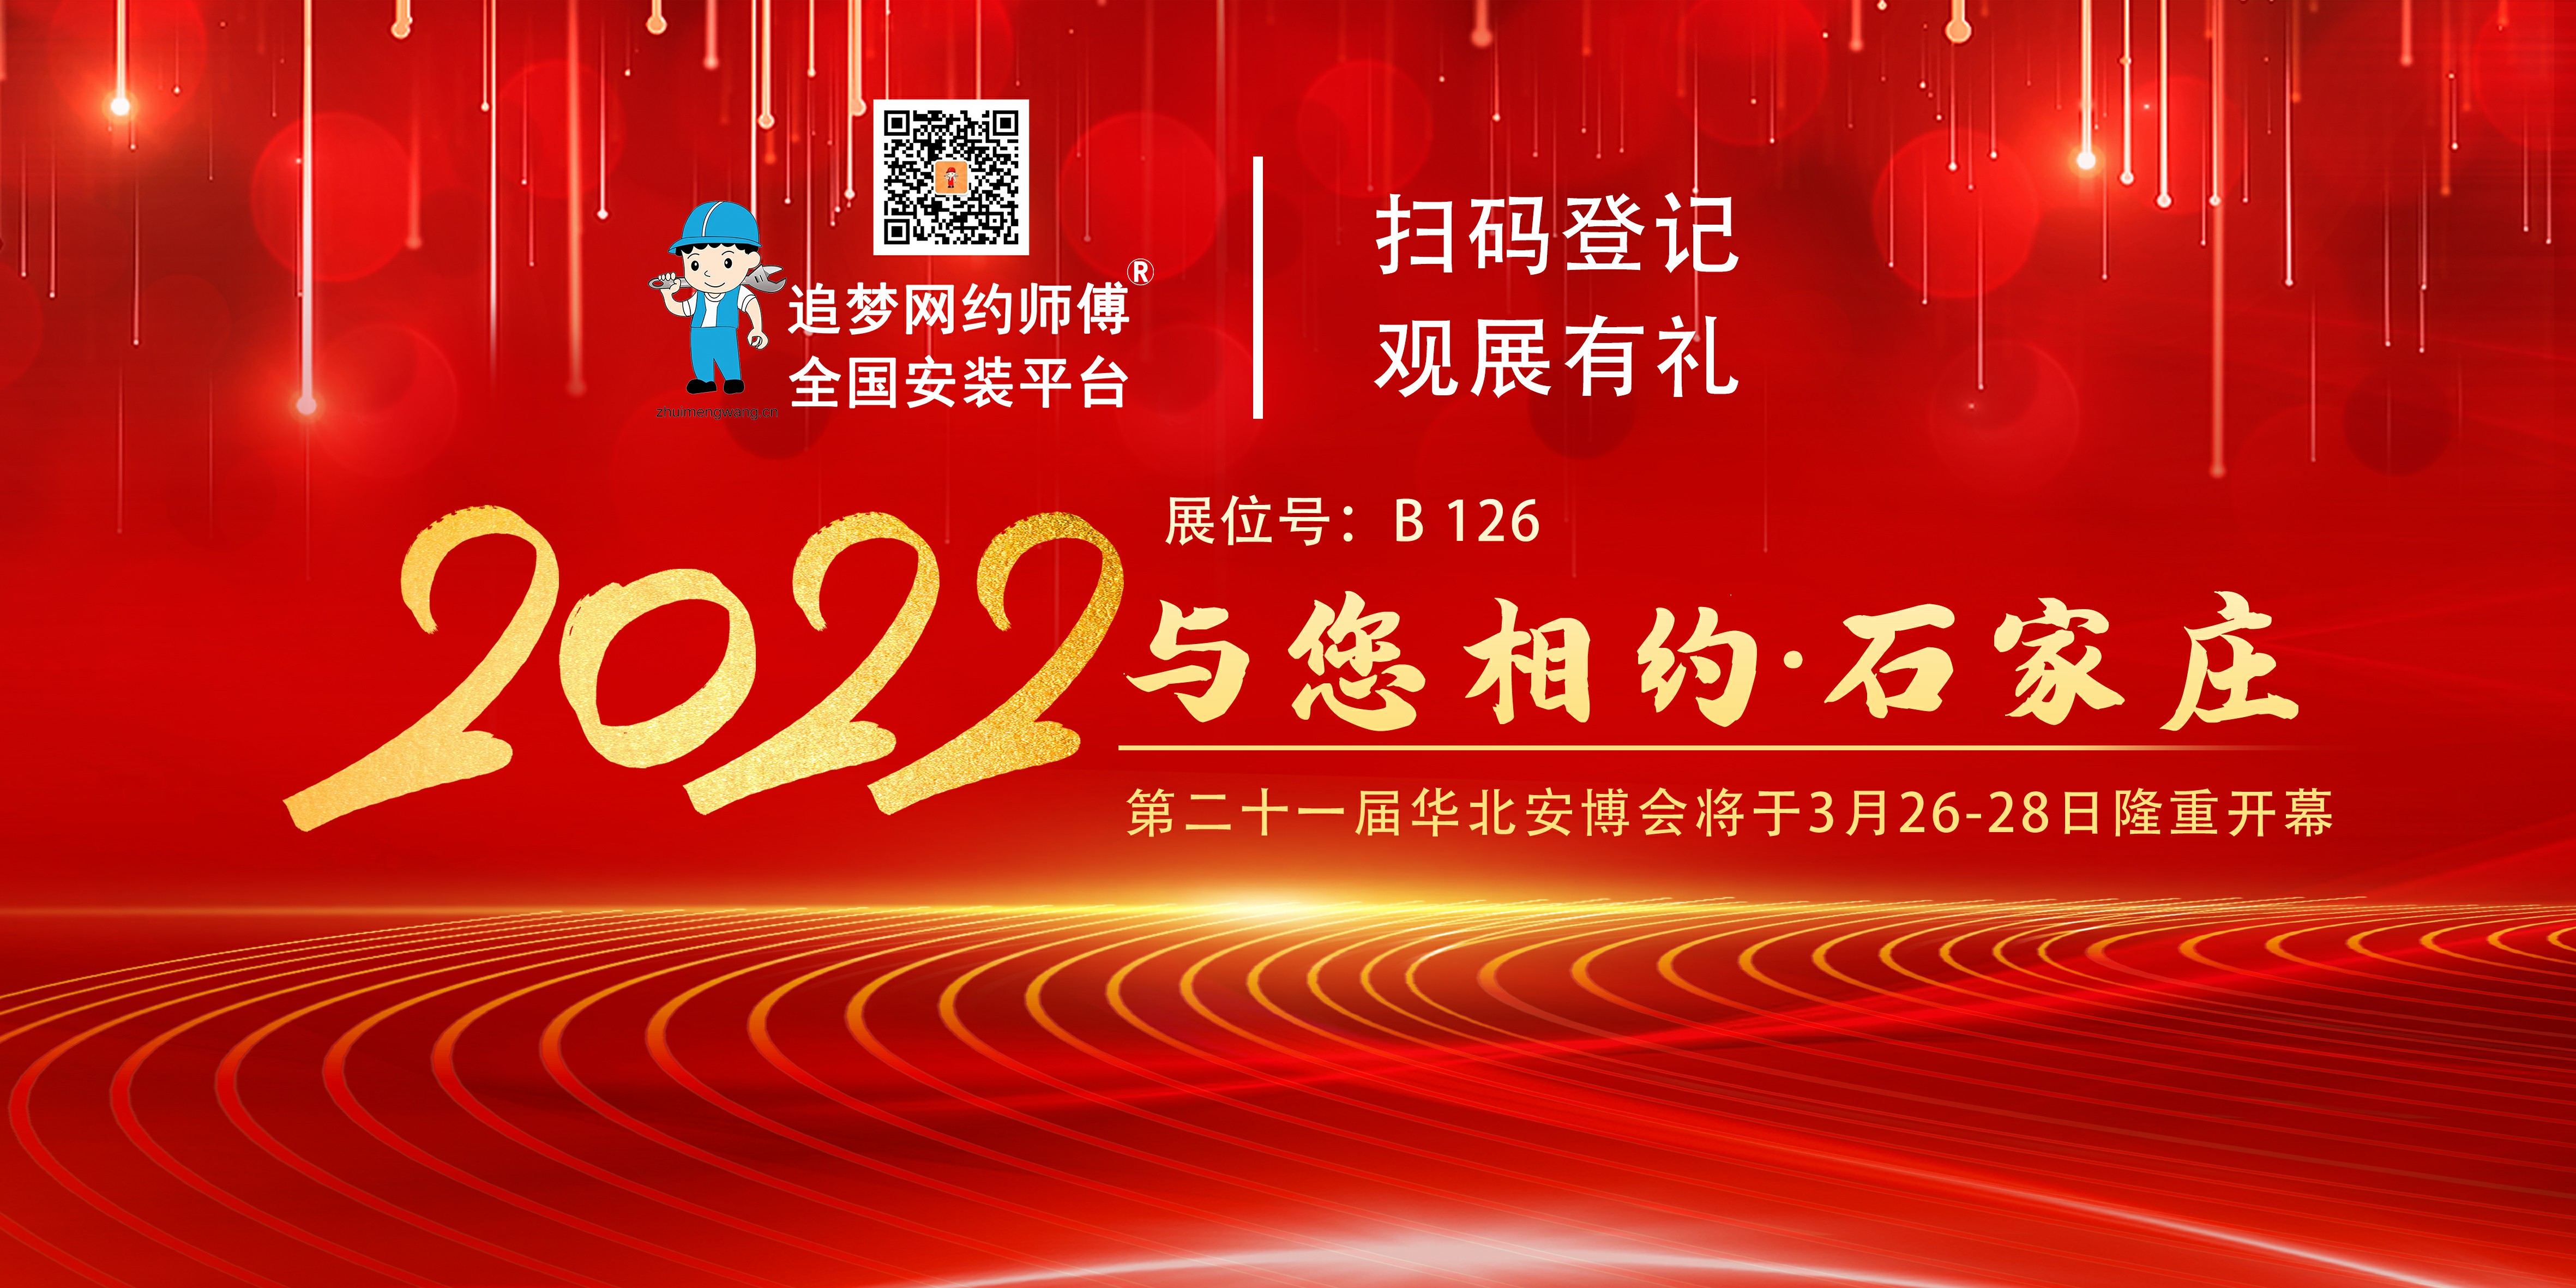 2022 第二十一届华北安博会将在石家庄隆重开幕